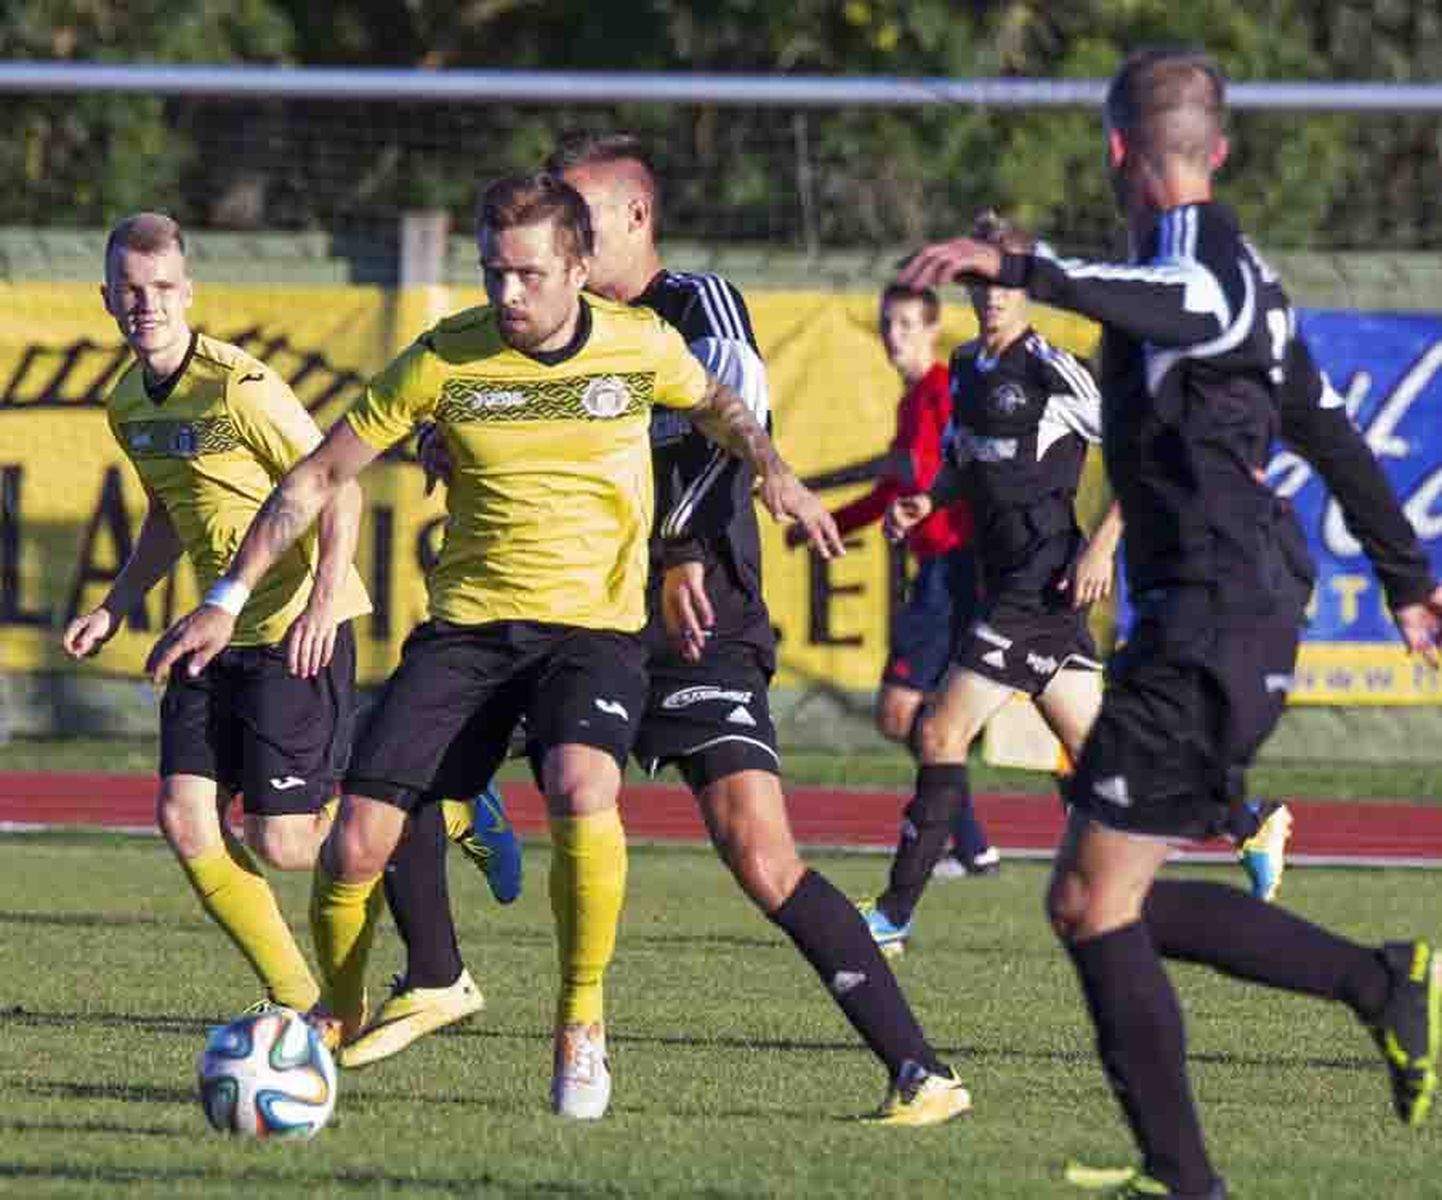 Viljandi jalgpalliklubi Tulevik esindusmeeskond võitles möödunud reedel pealinnas peetud esiliigakohtumises välja viigipunkti Tallinna FC Levadia teise koosseisu vastu.